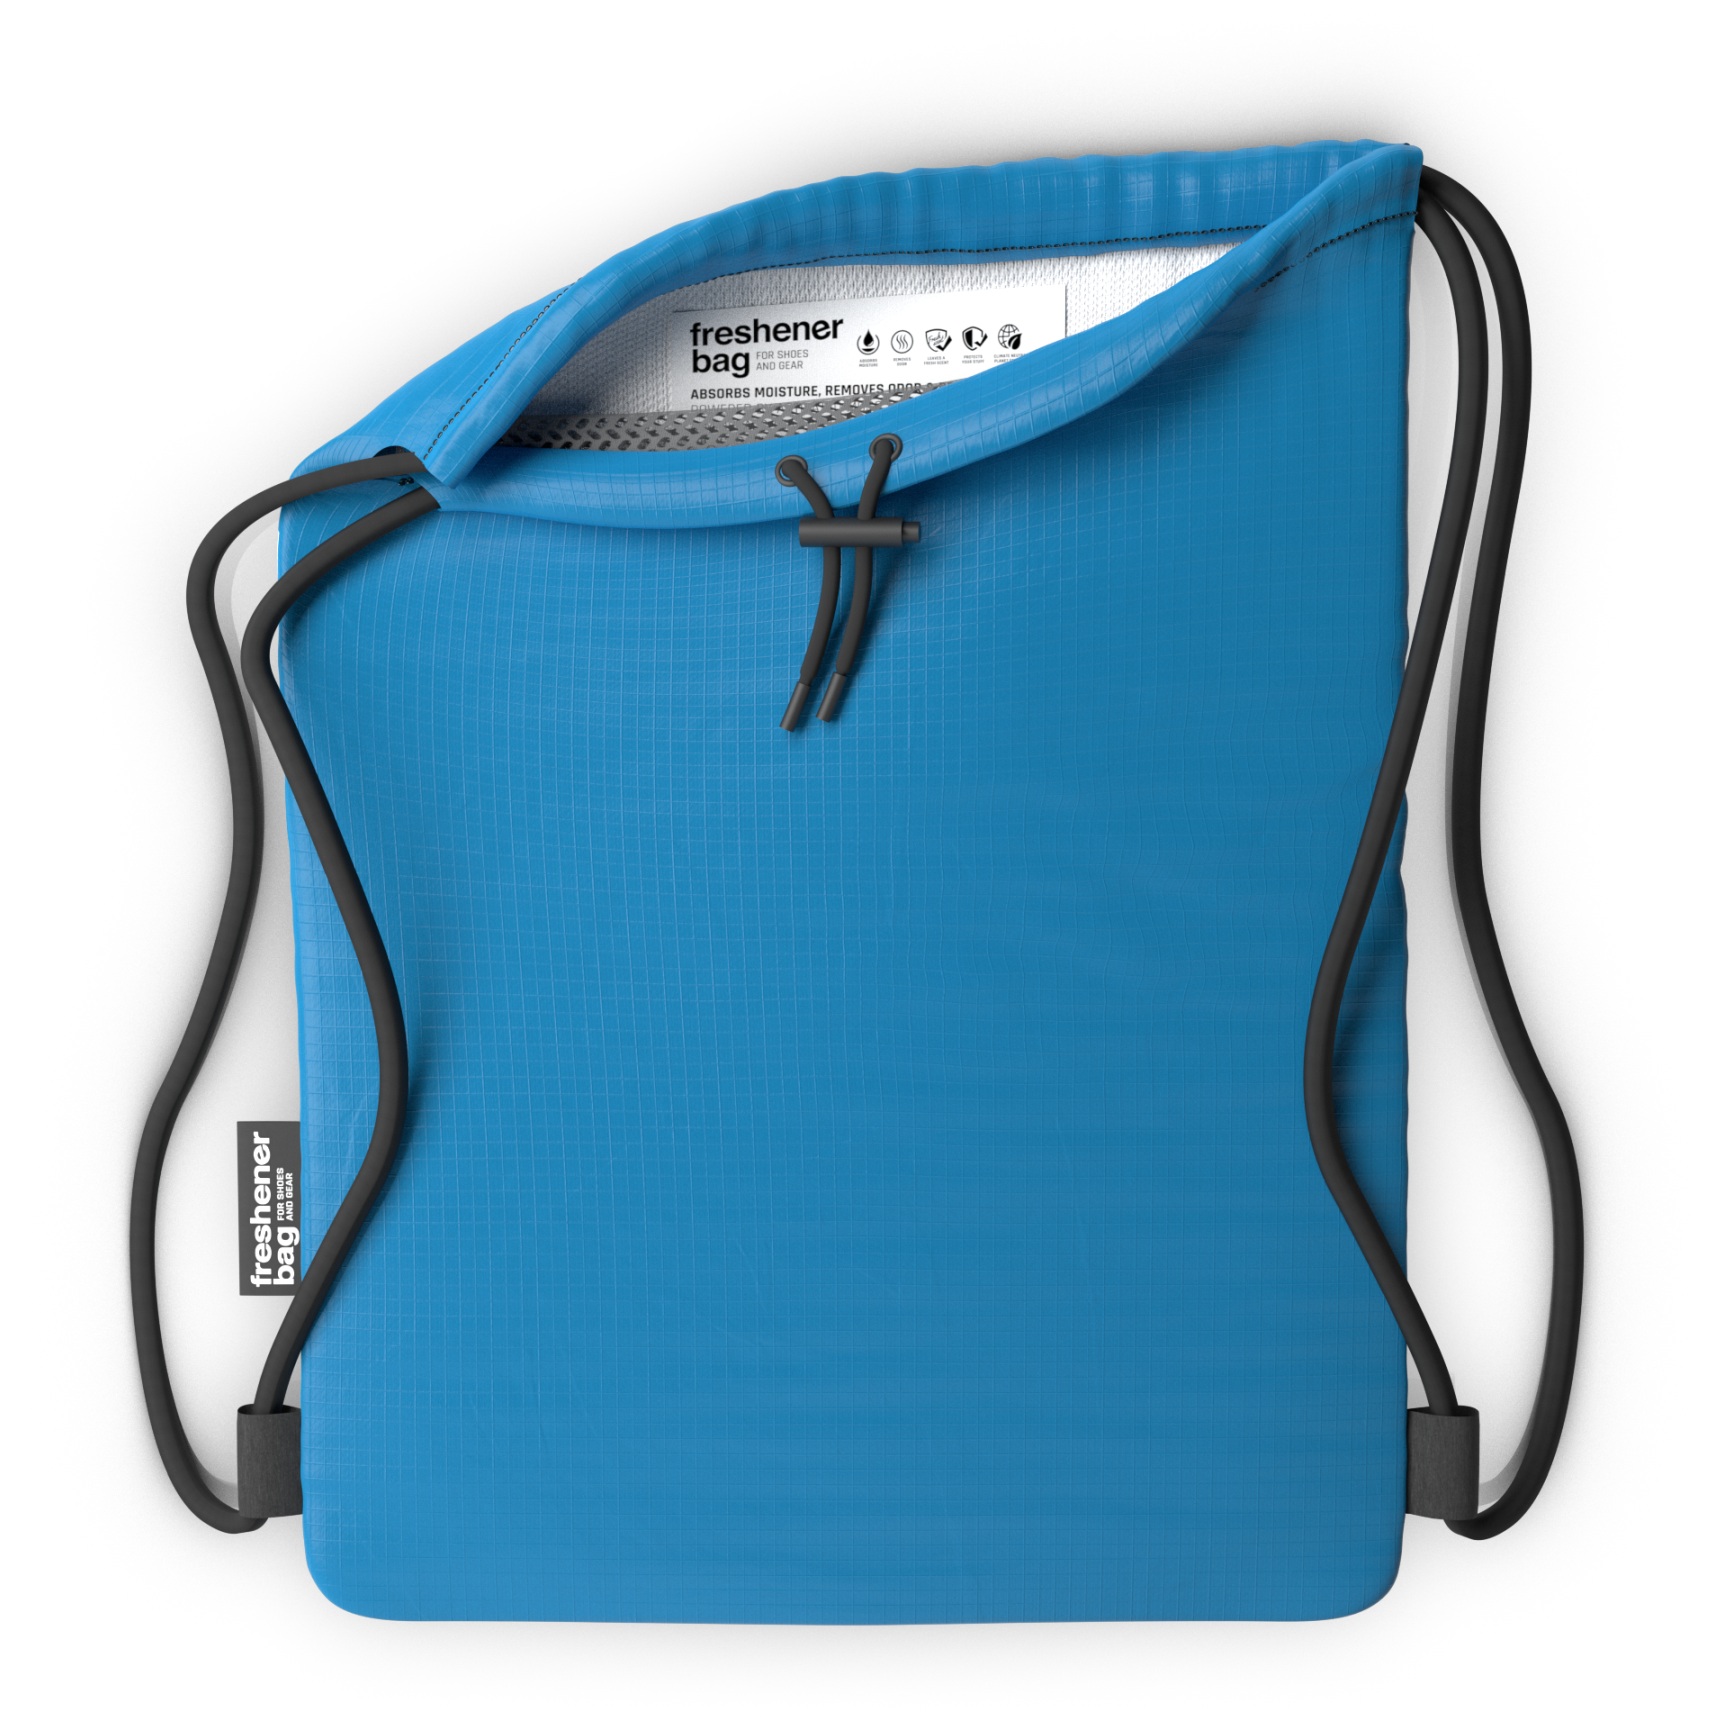 Produktbild von SmellWell Freshener Bag XL - Anti-Odor Turnbeutel - 20L - blau